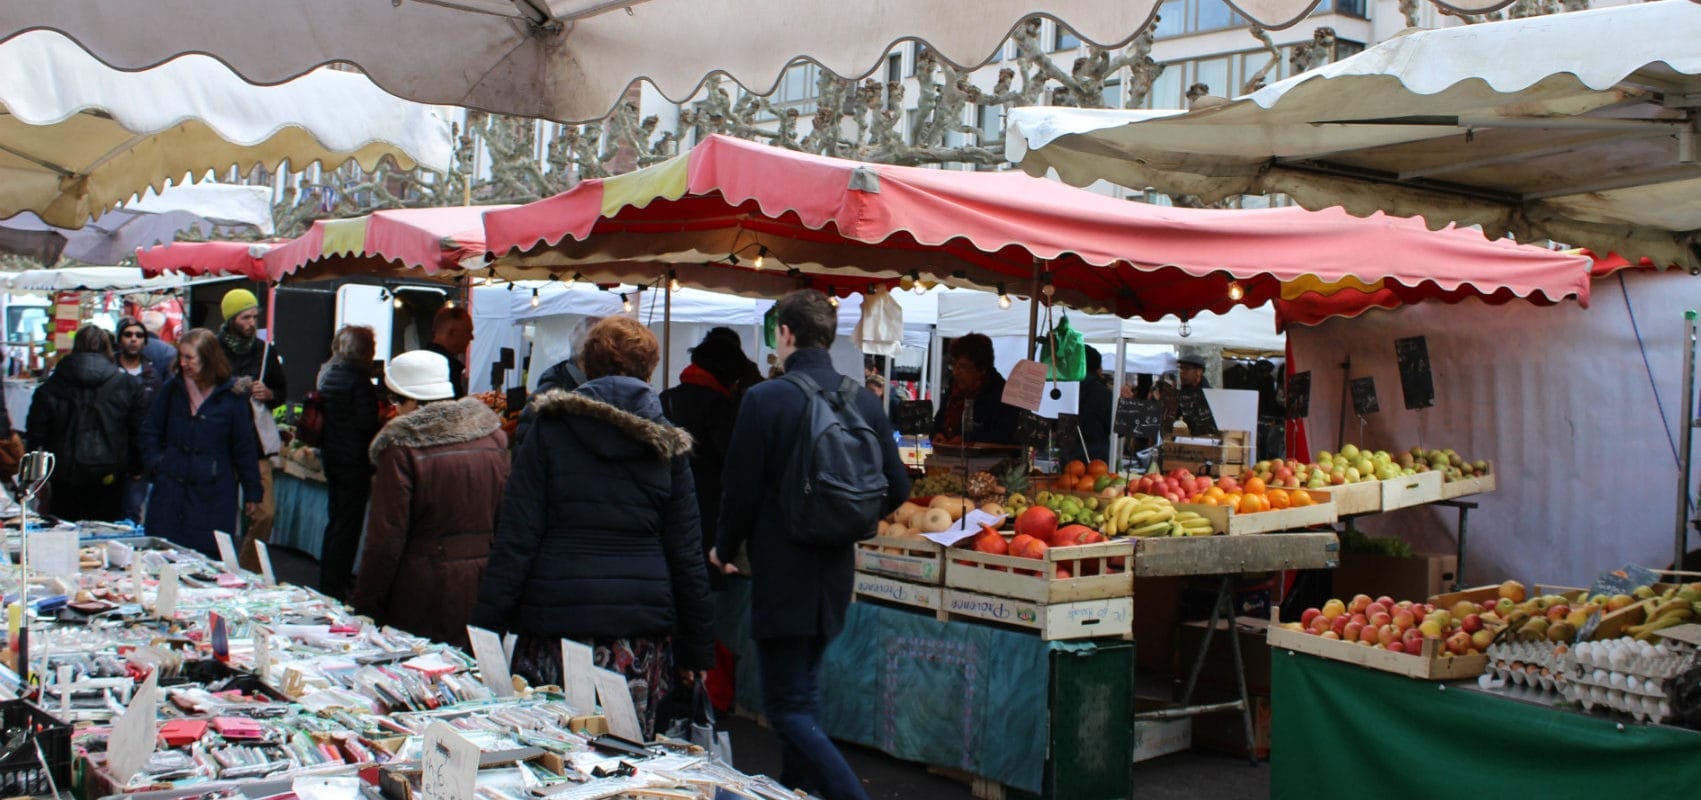 Marché de Noël : les commerçants du marché Broglie craignent d’être les dindons de la farce